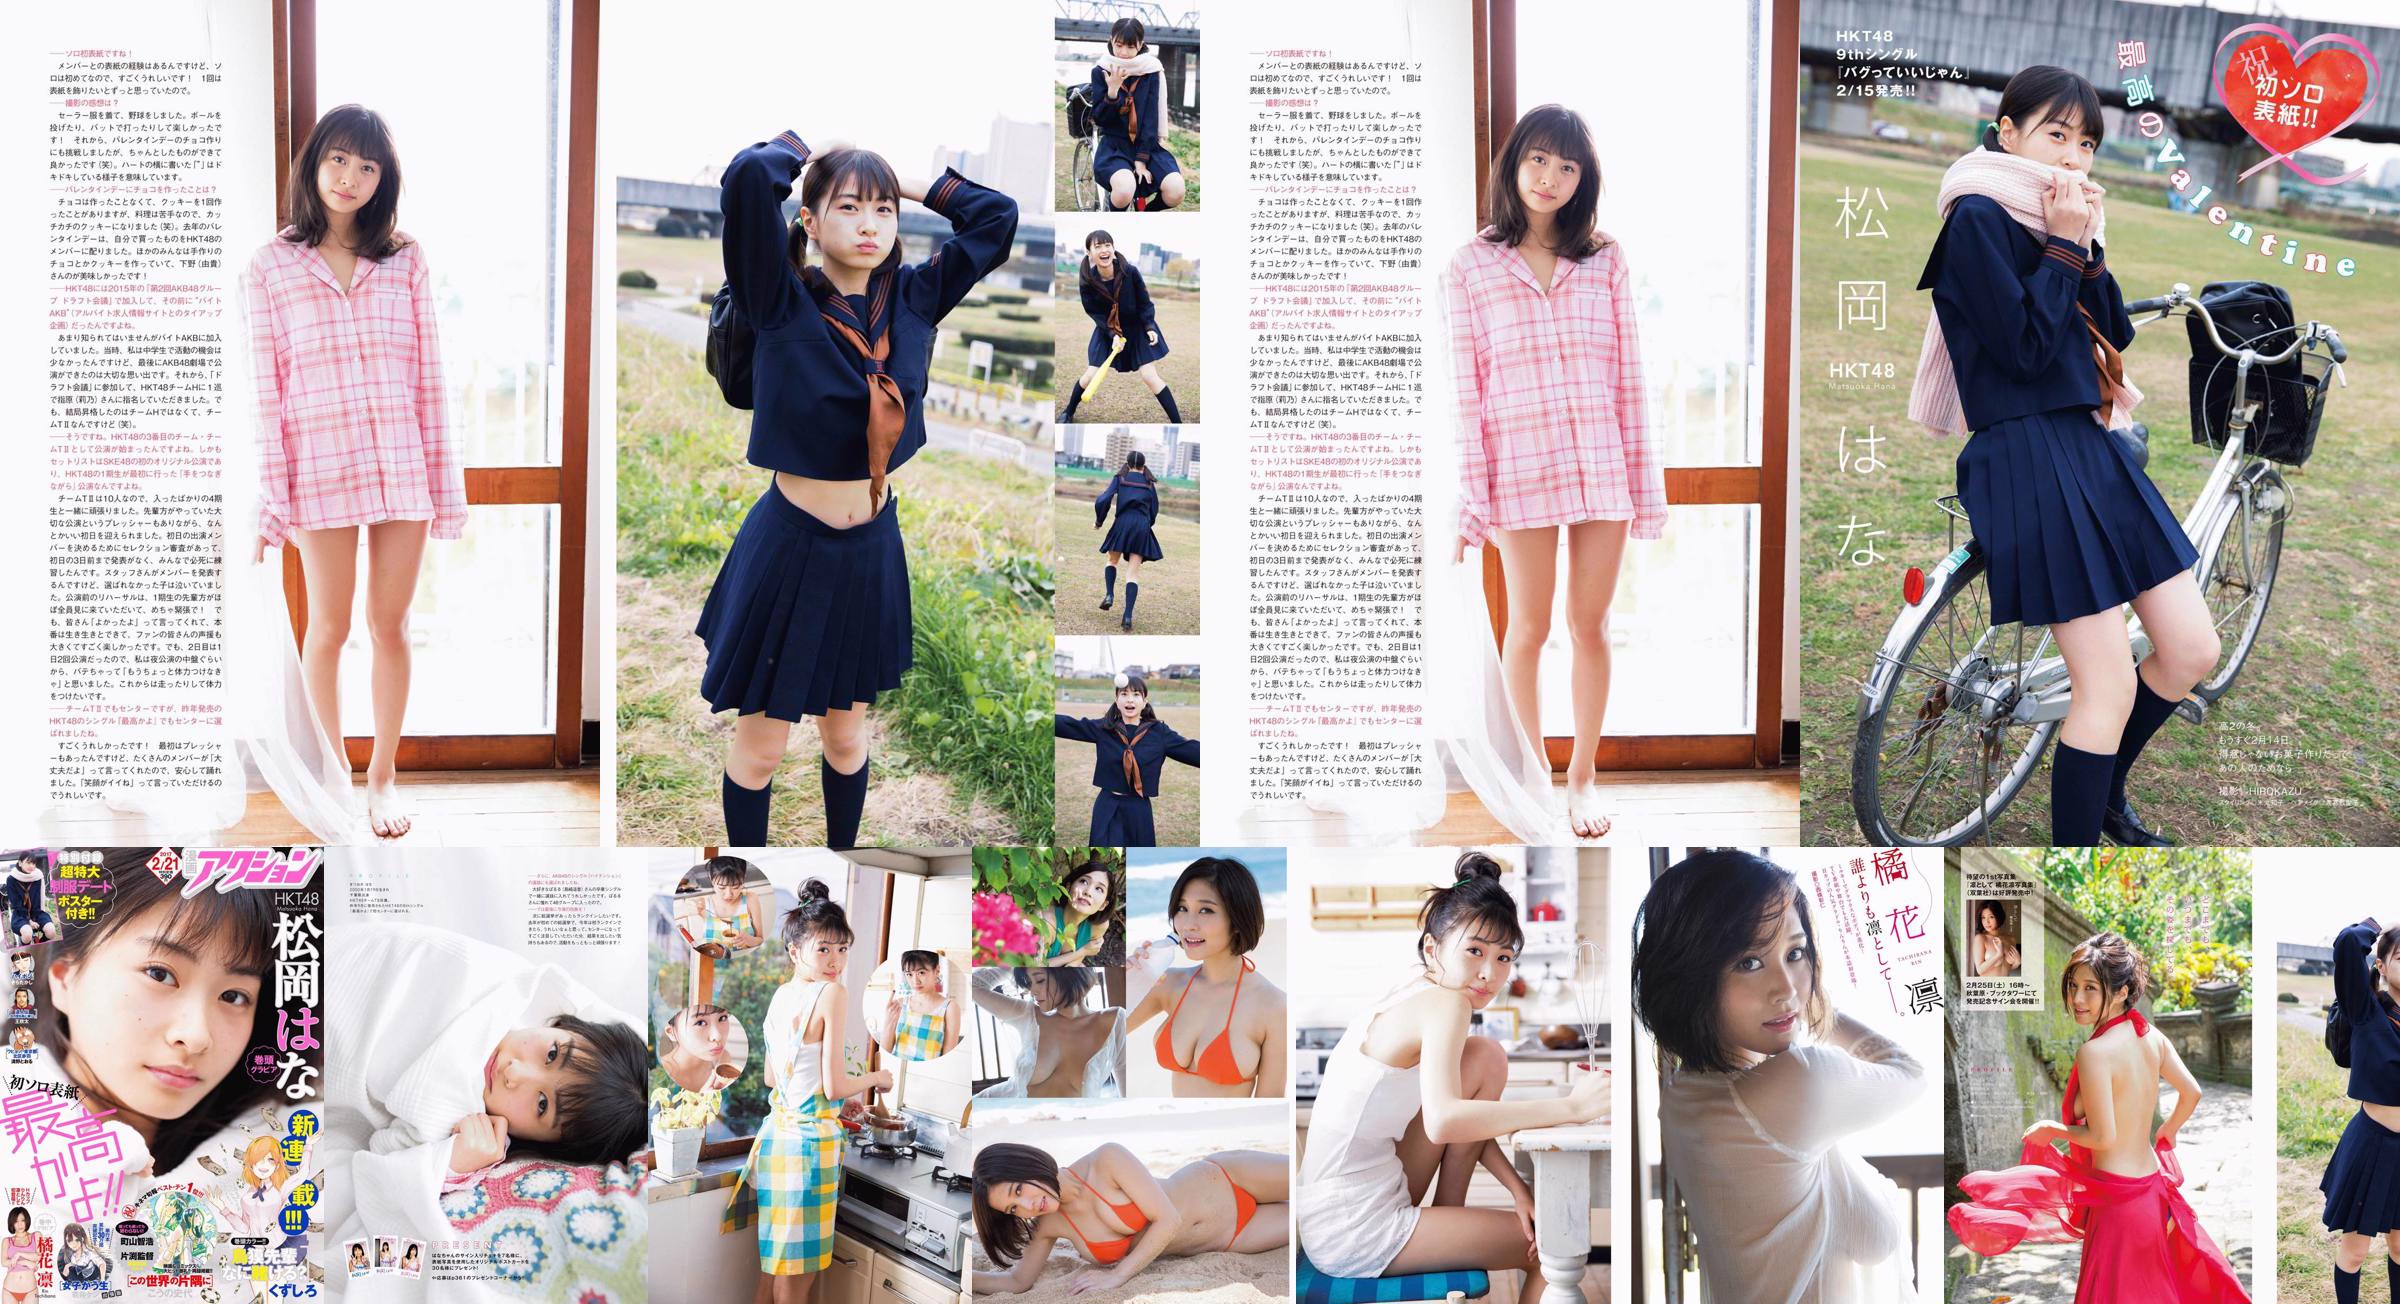 [Ação de mangá] Hana Matsuoka Rin Tachibana 2017 No.04 Photography No.58ee18 Página 3